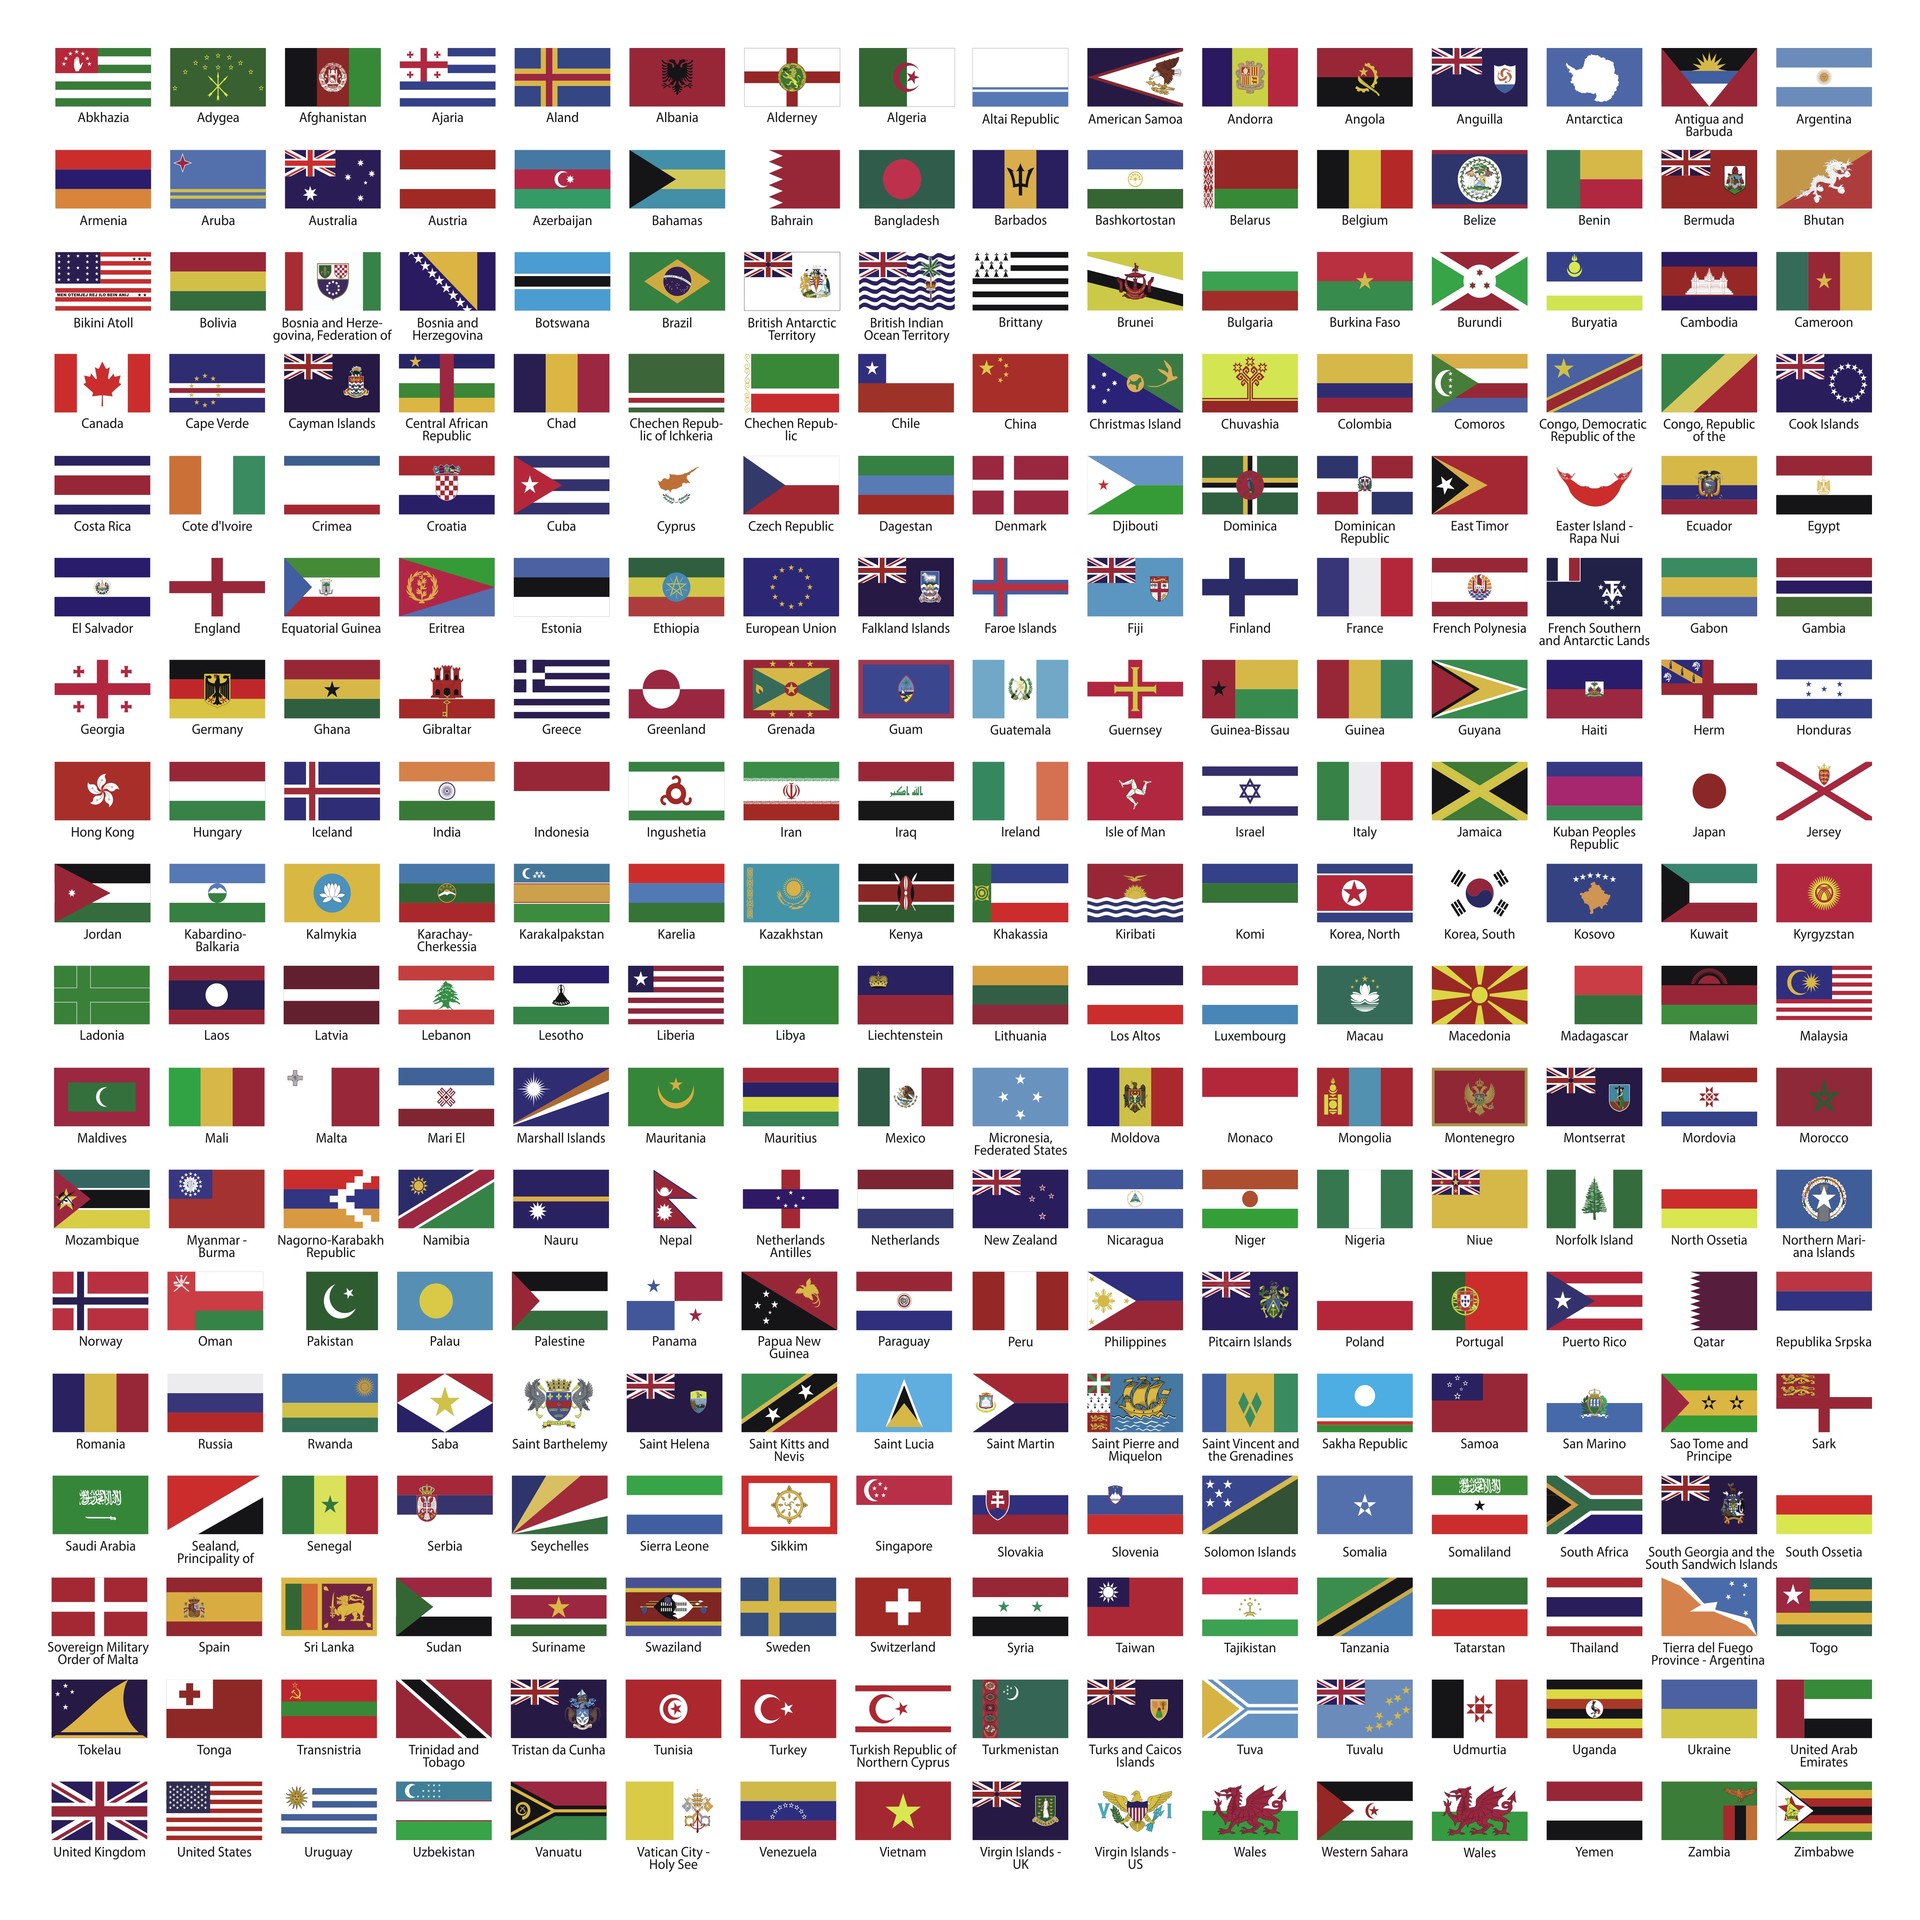 Флаги всех стран мира